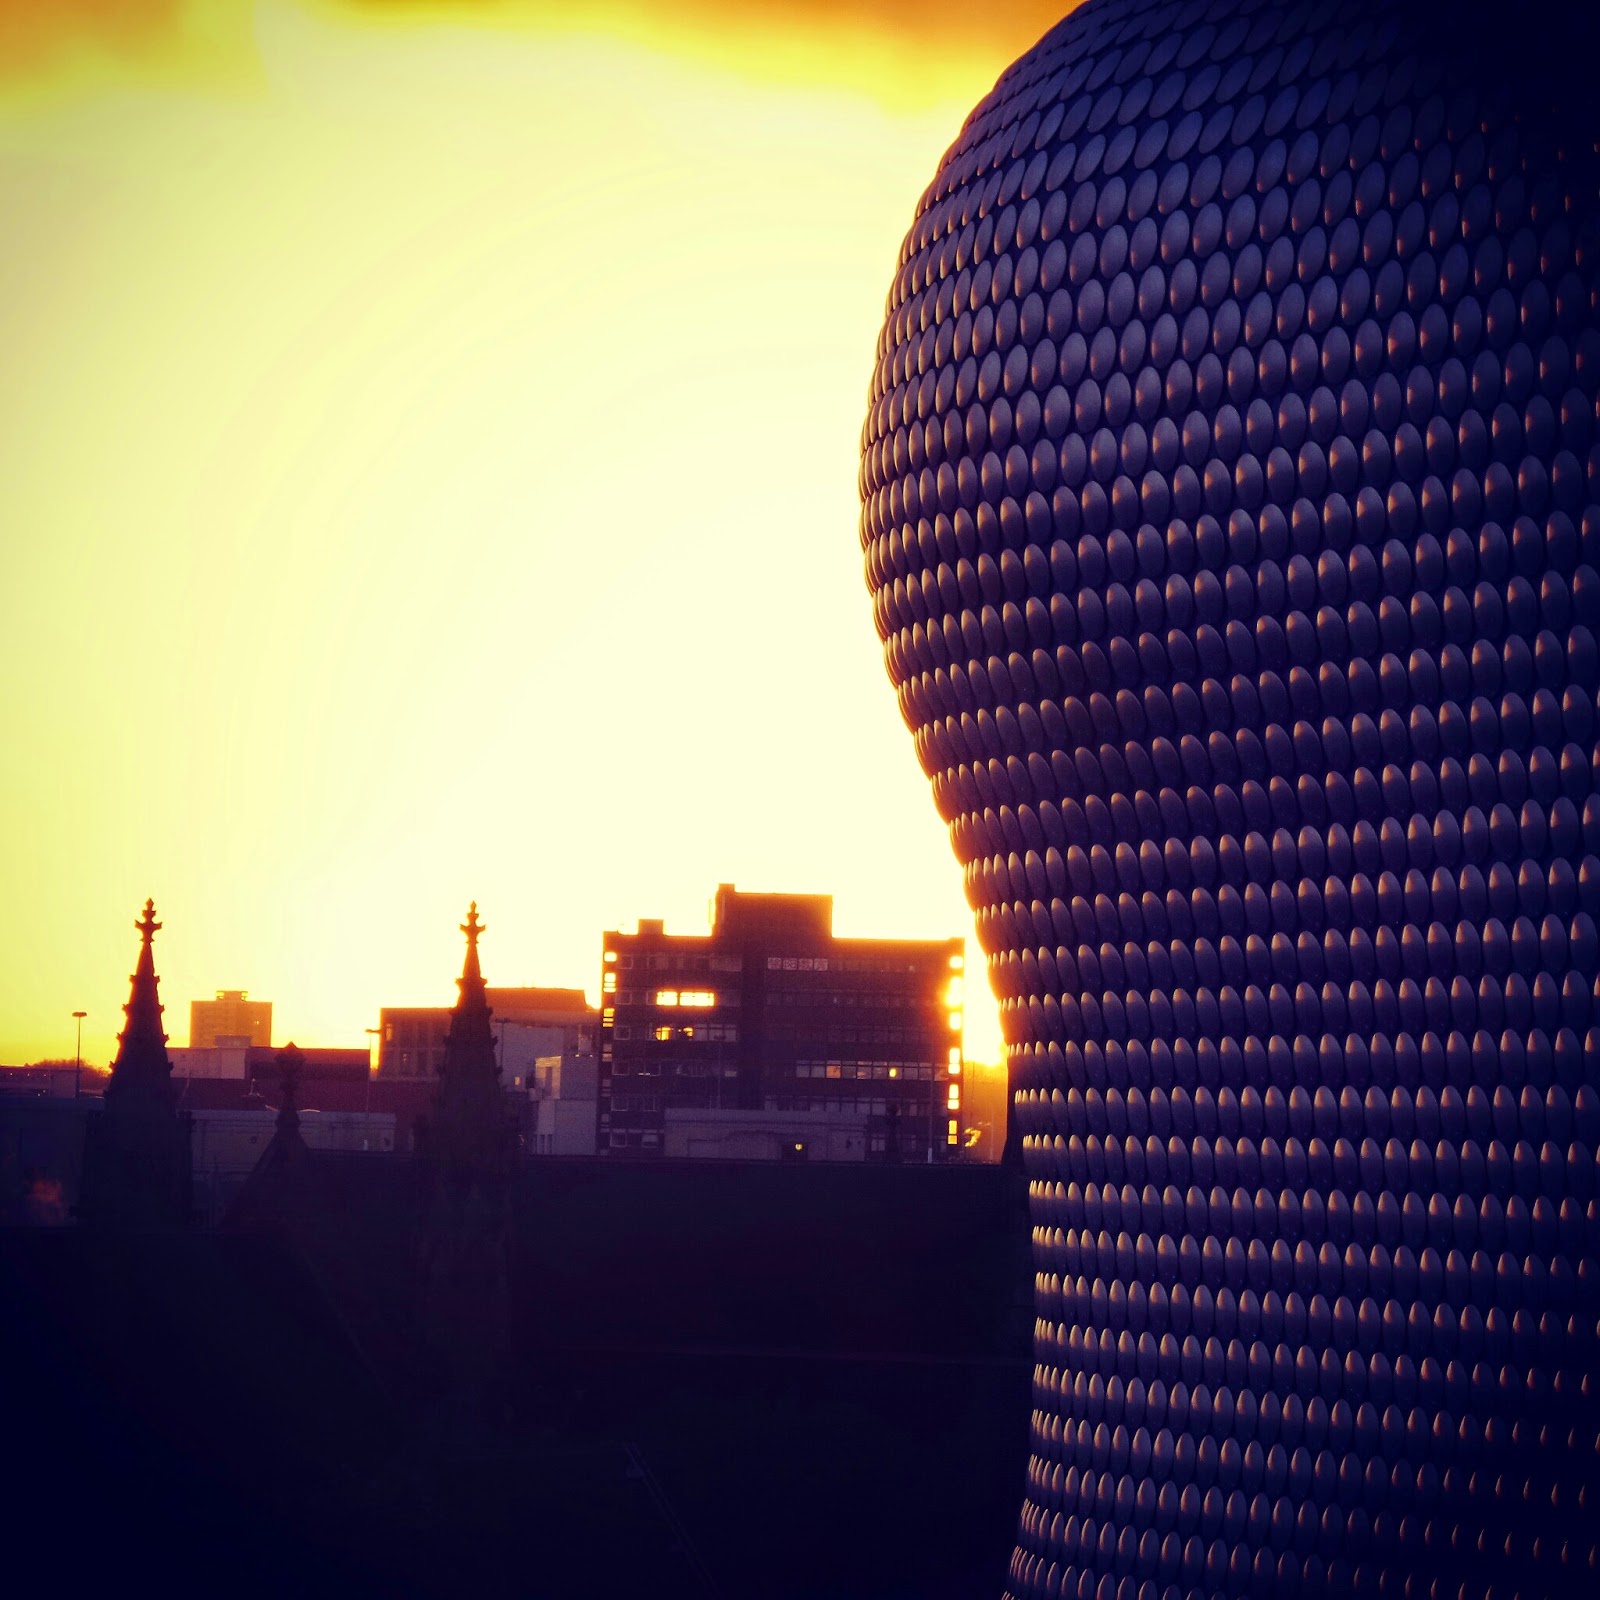 Birmingham at Sunset